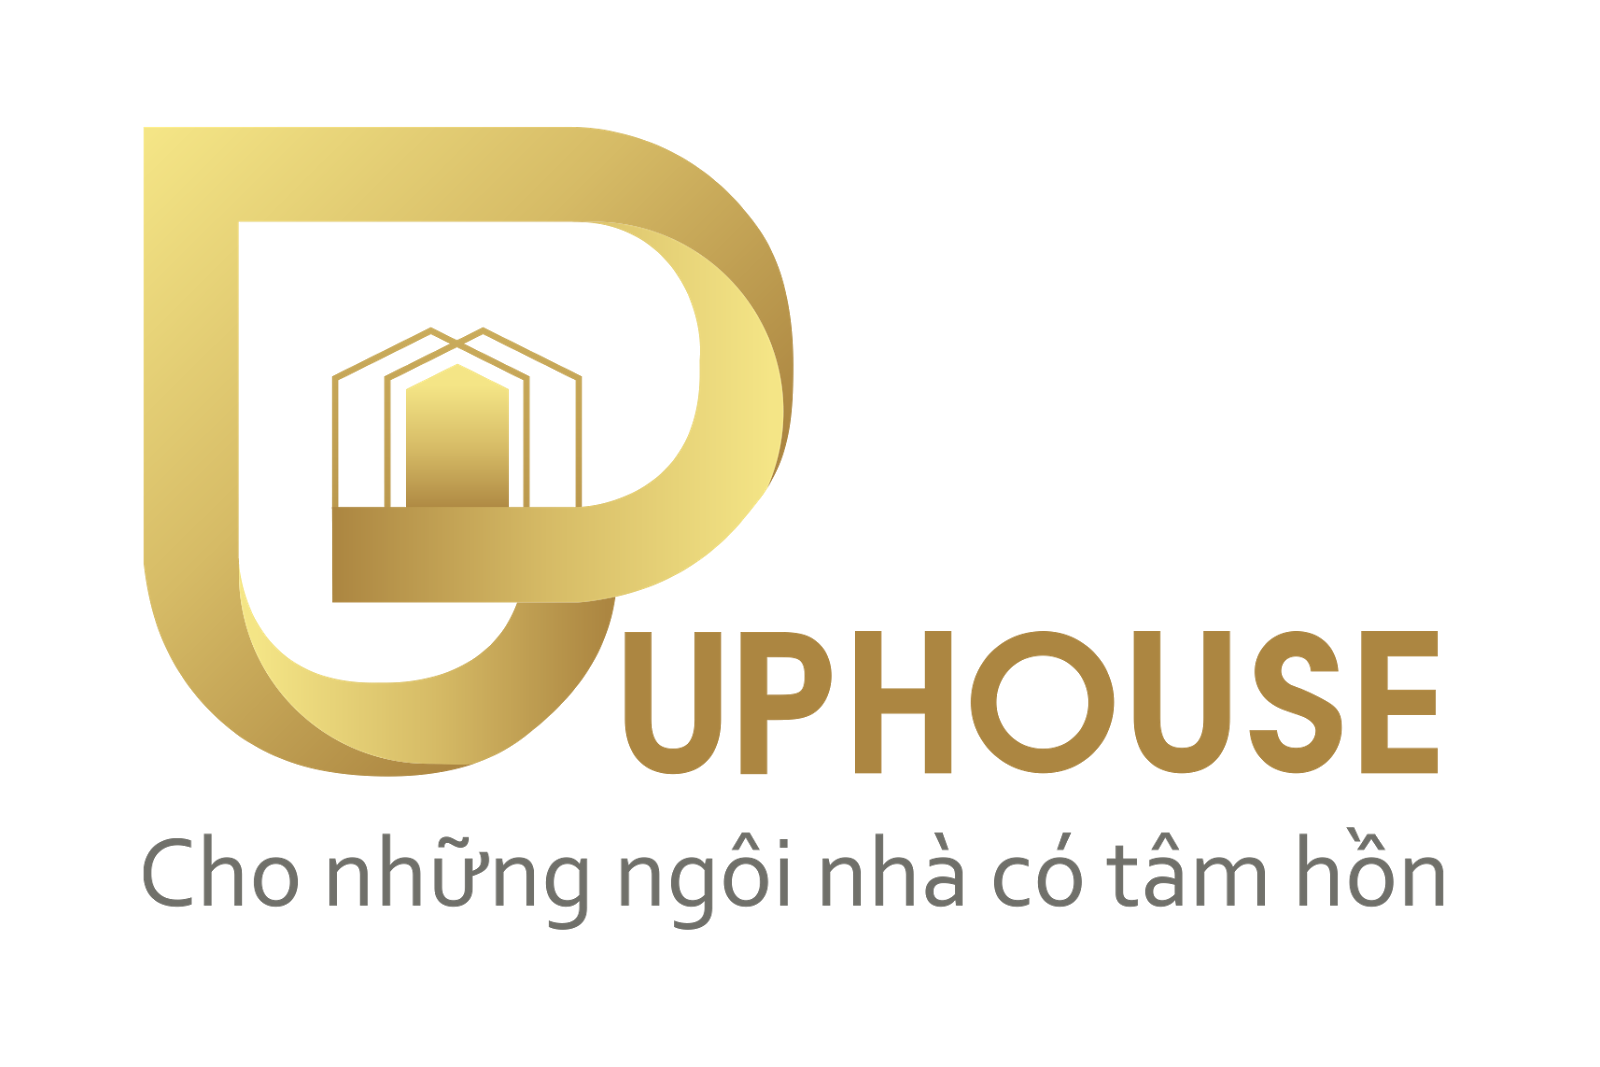 Liên hệ UpHouse